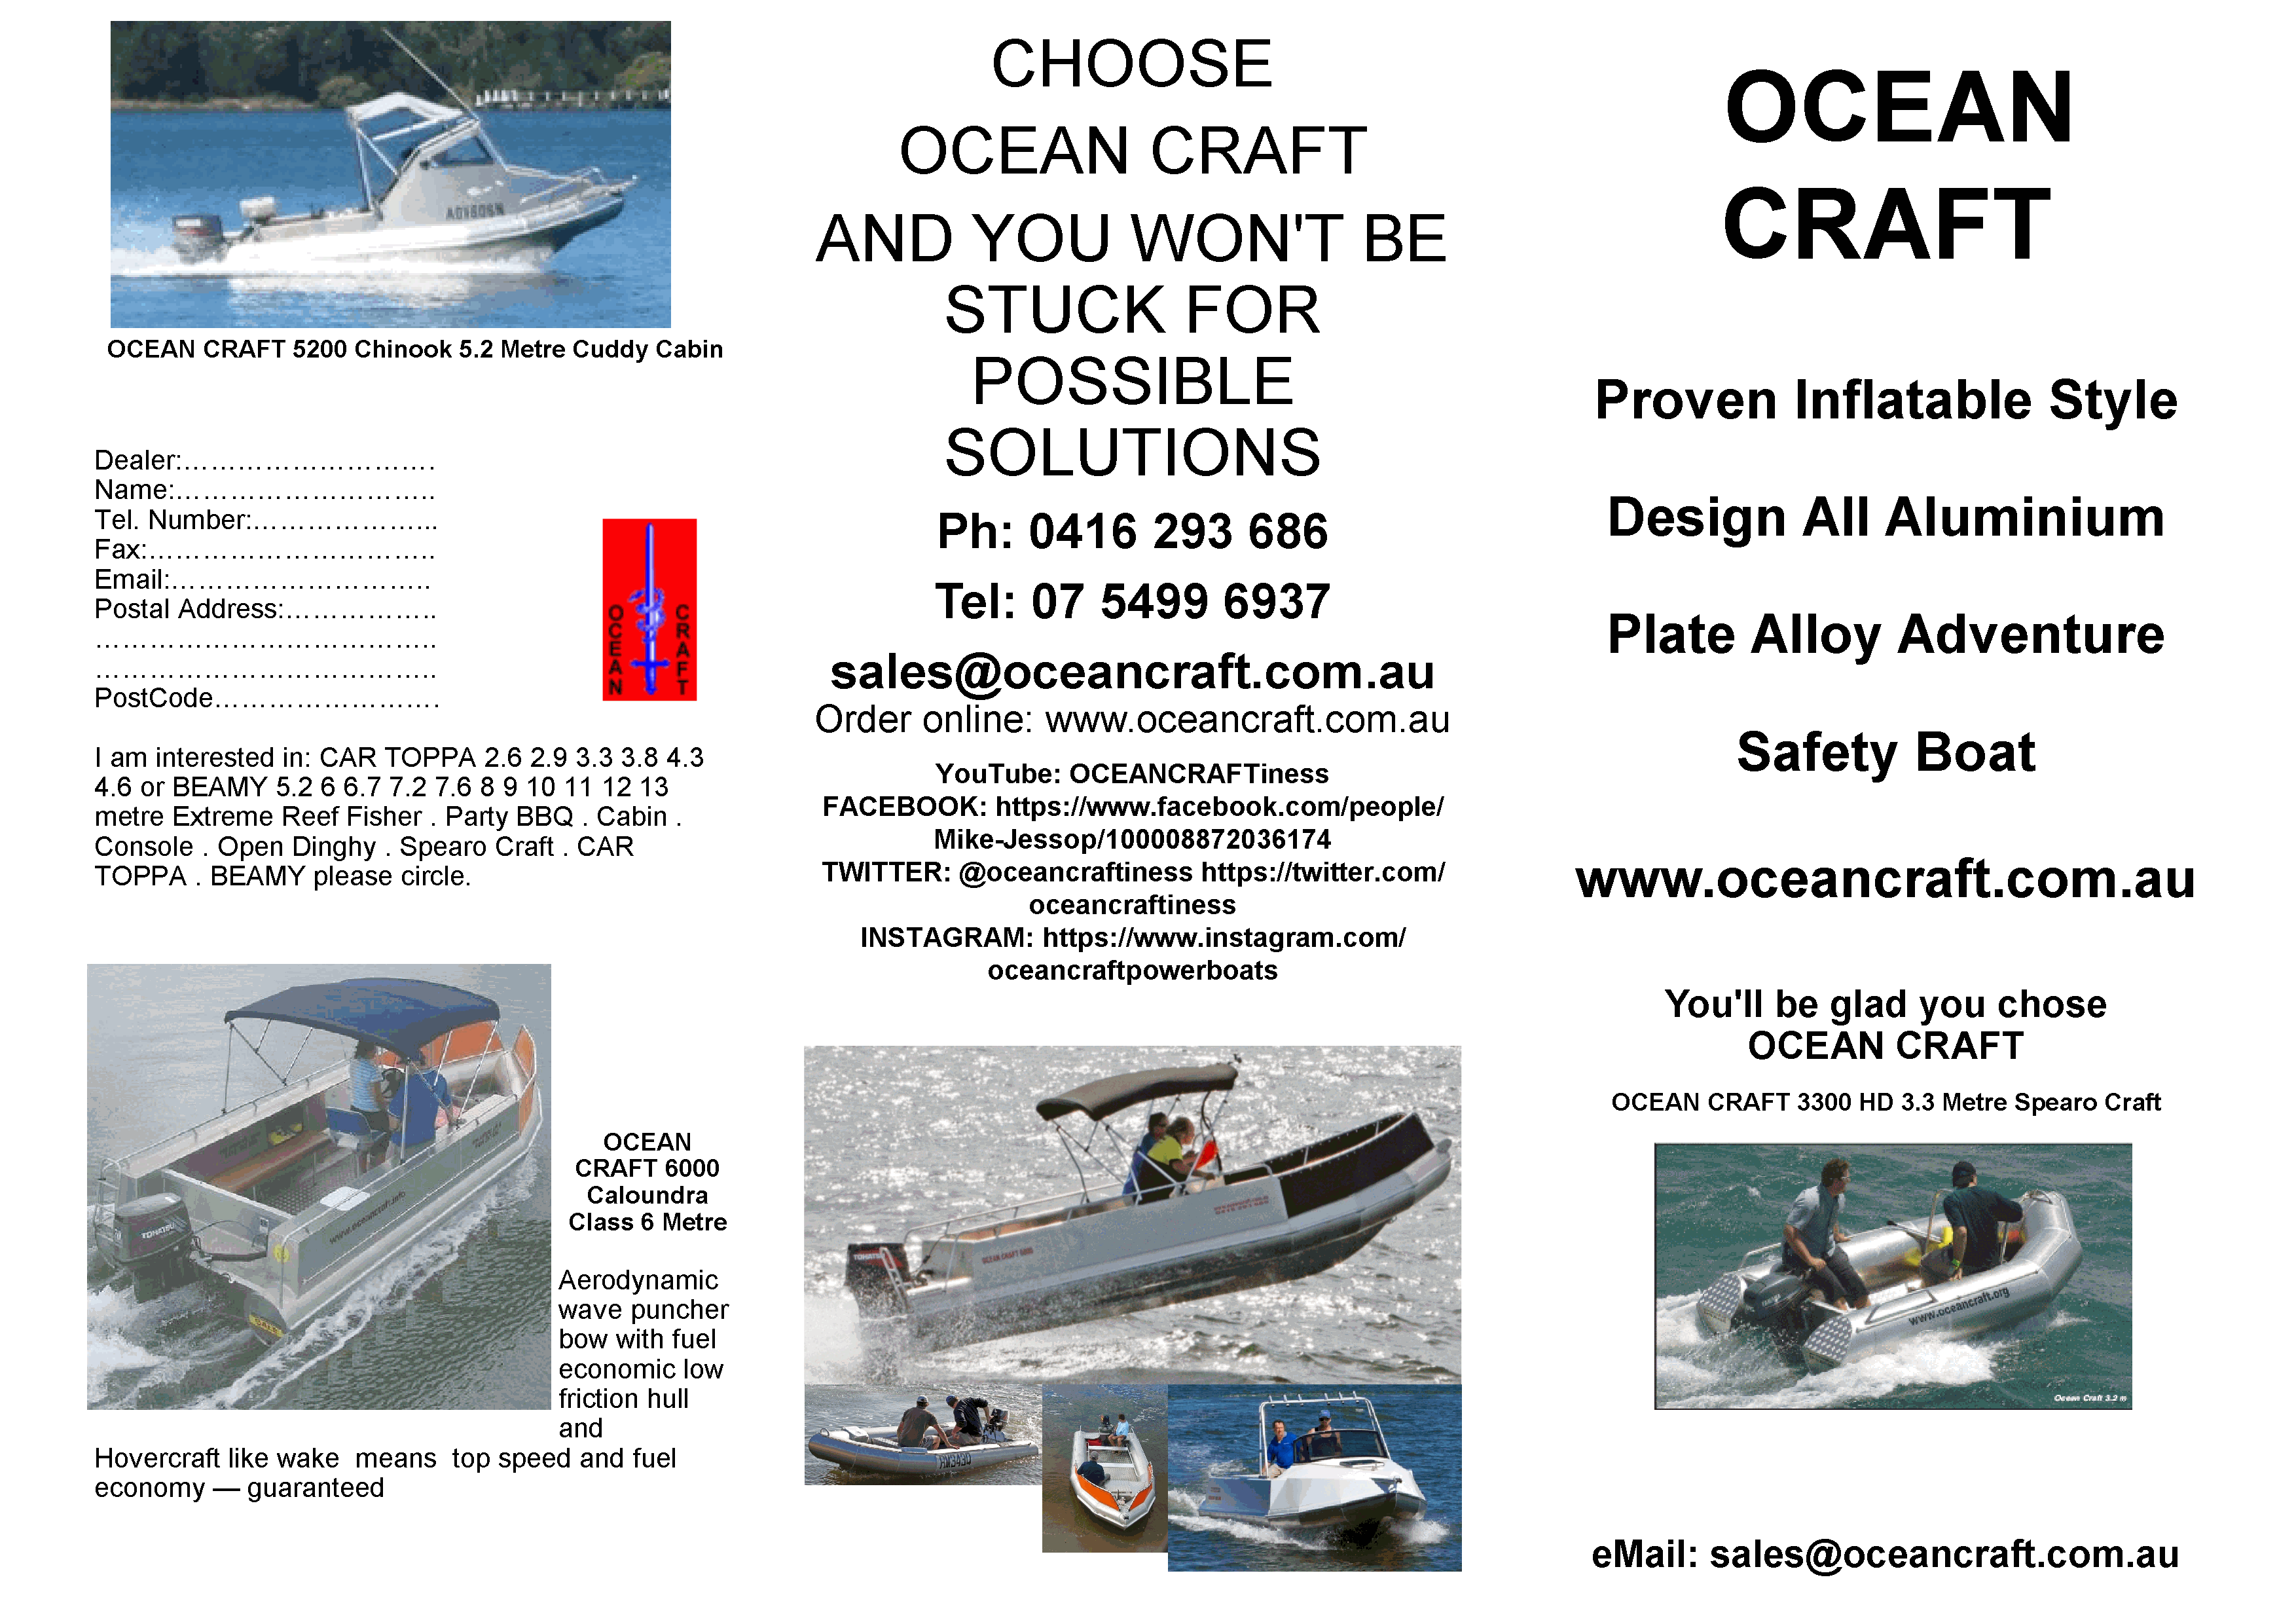 OCEAN CRAFT latest ocean craft literature